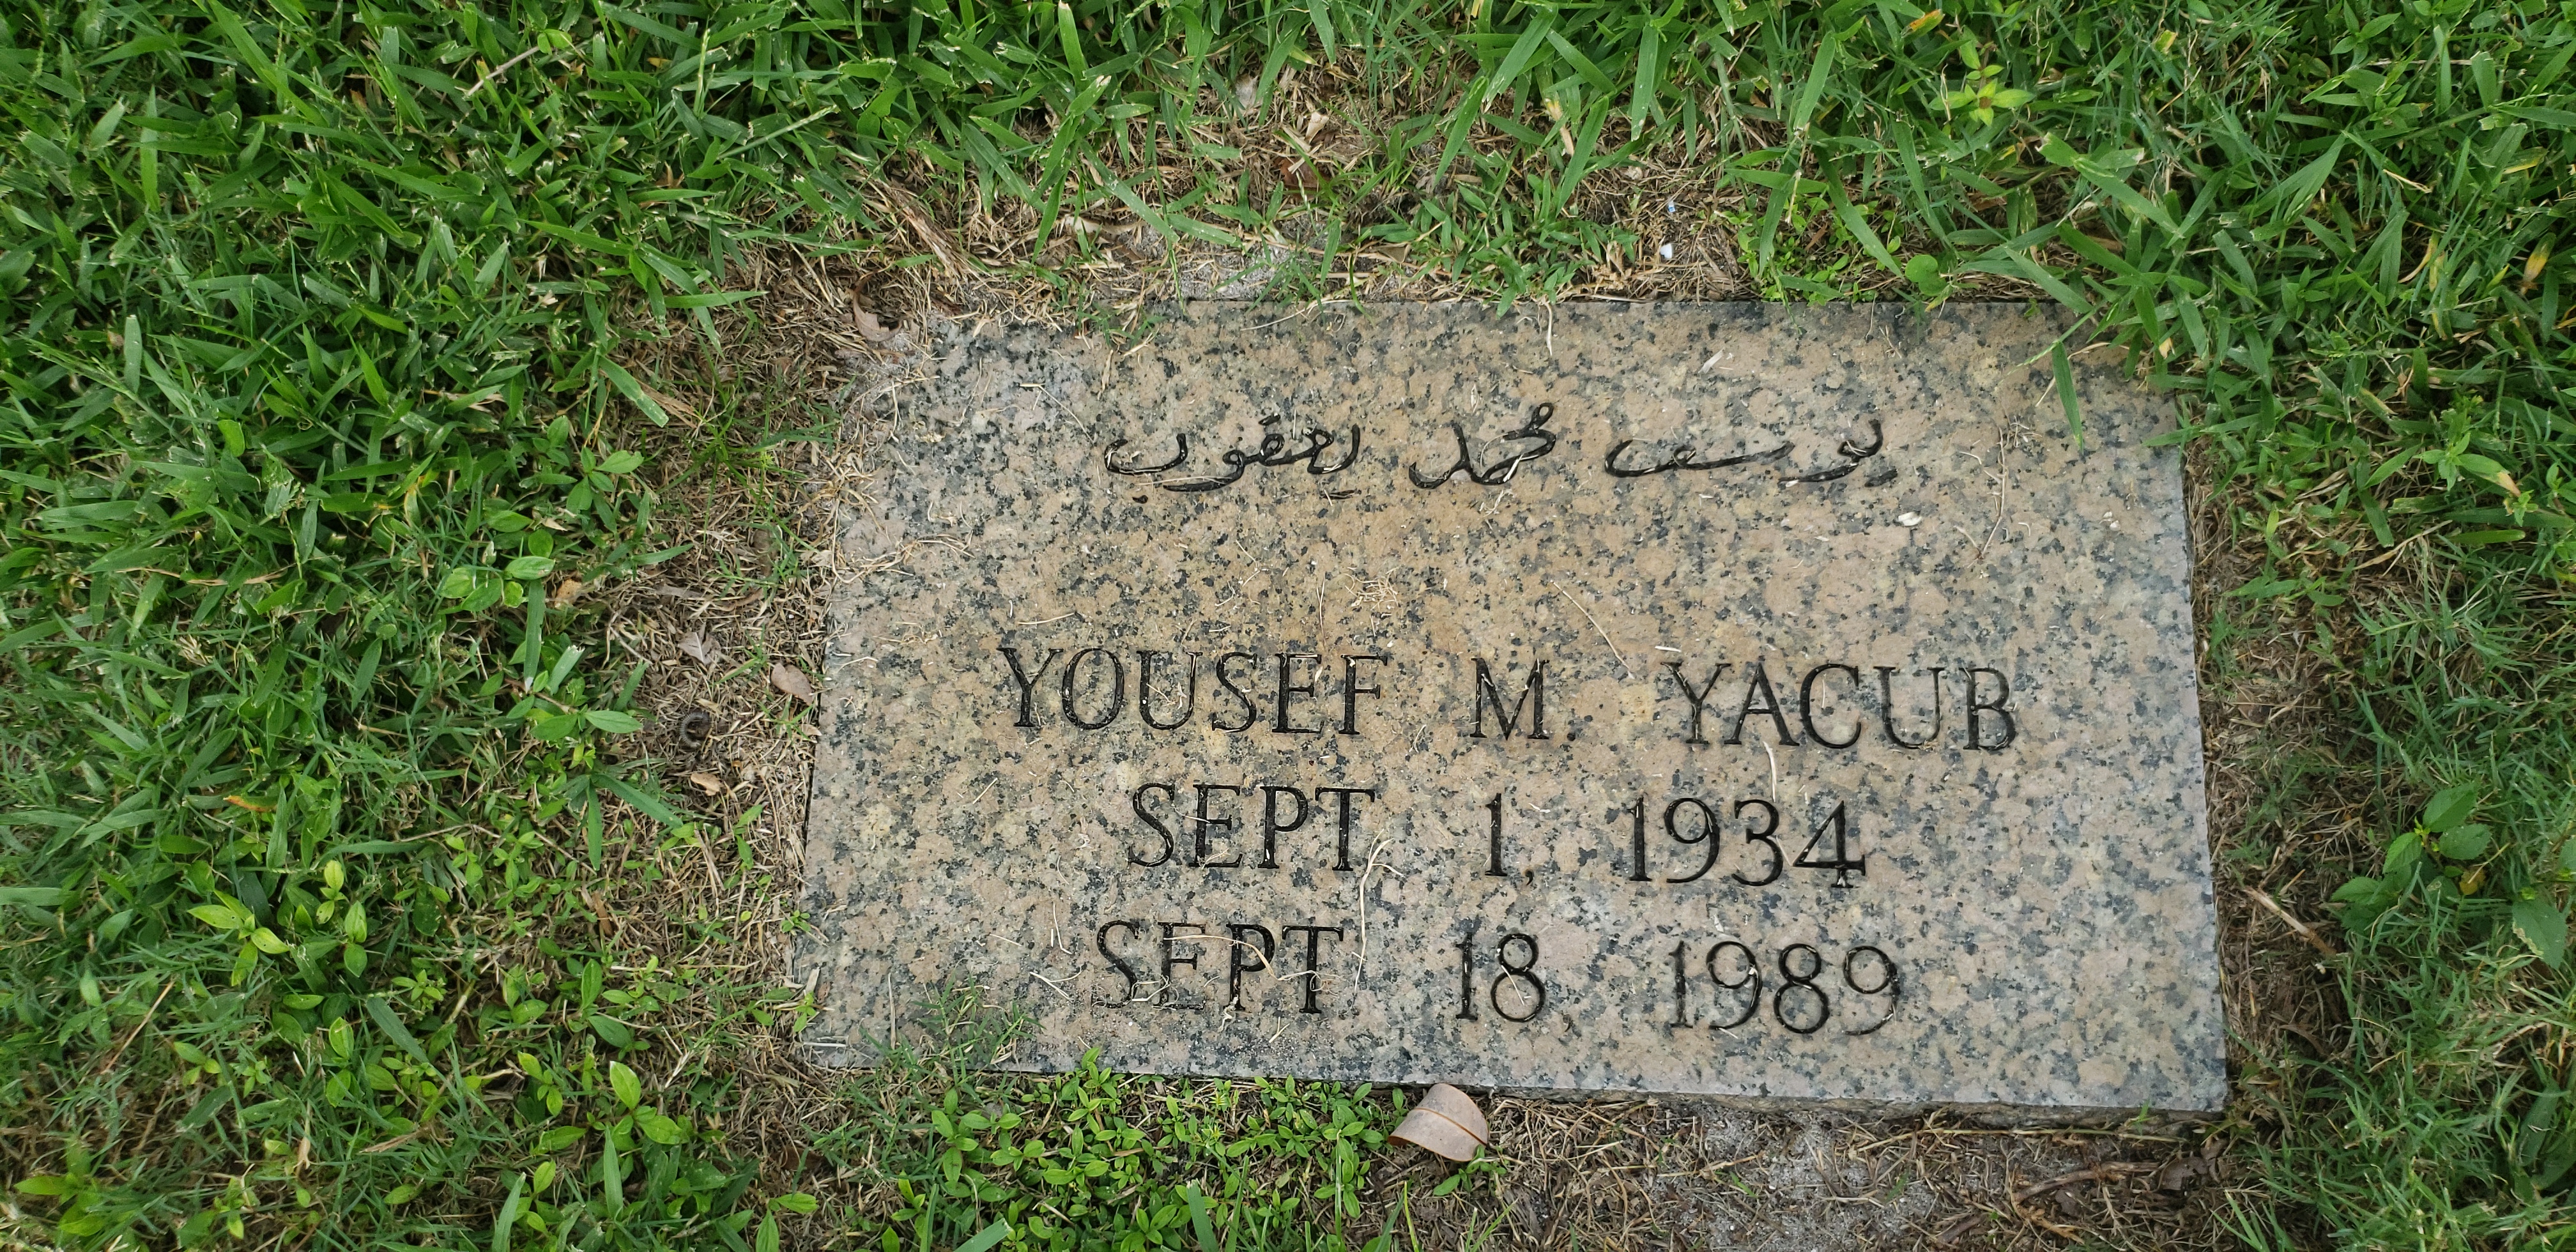 Yousef M Yacub